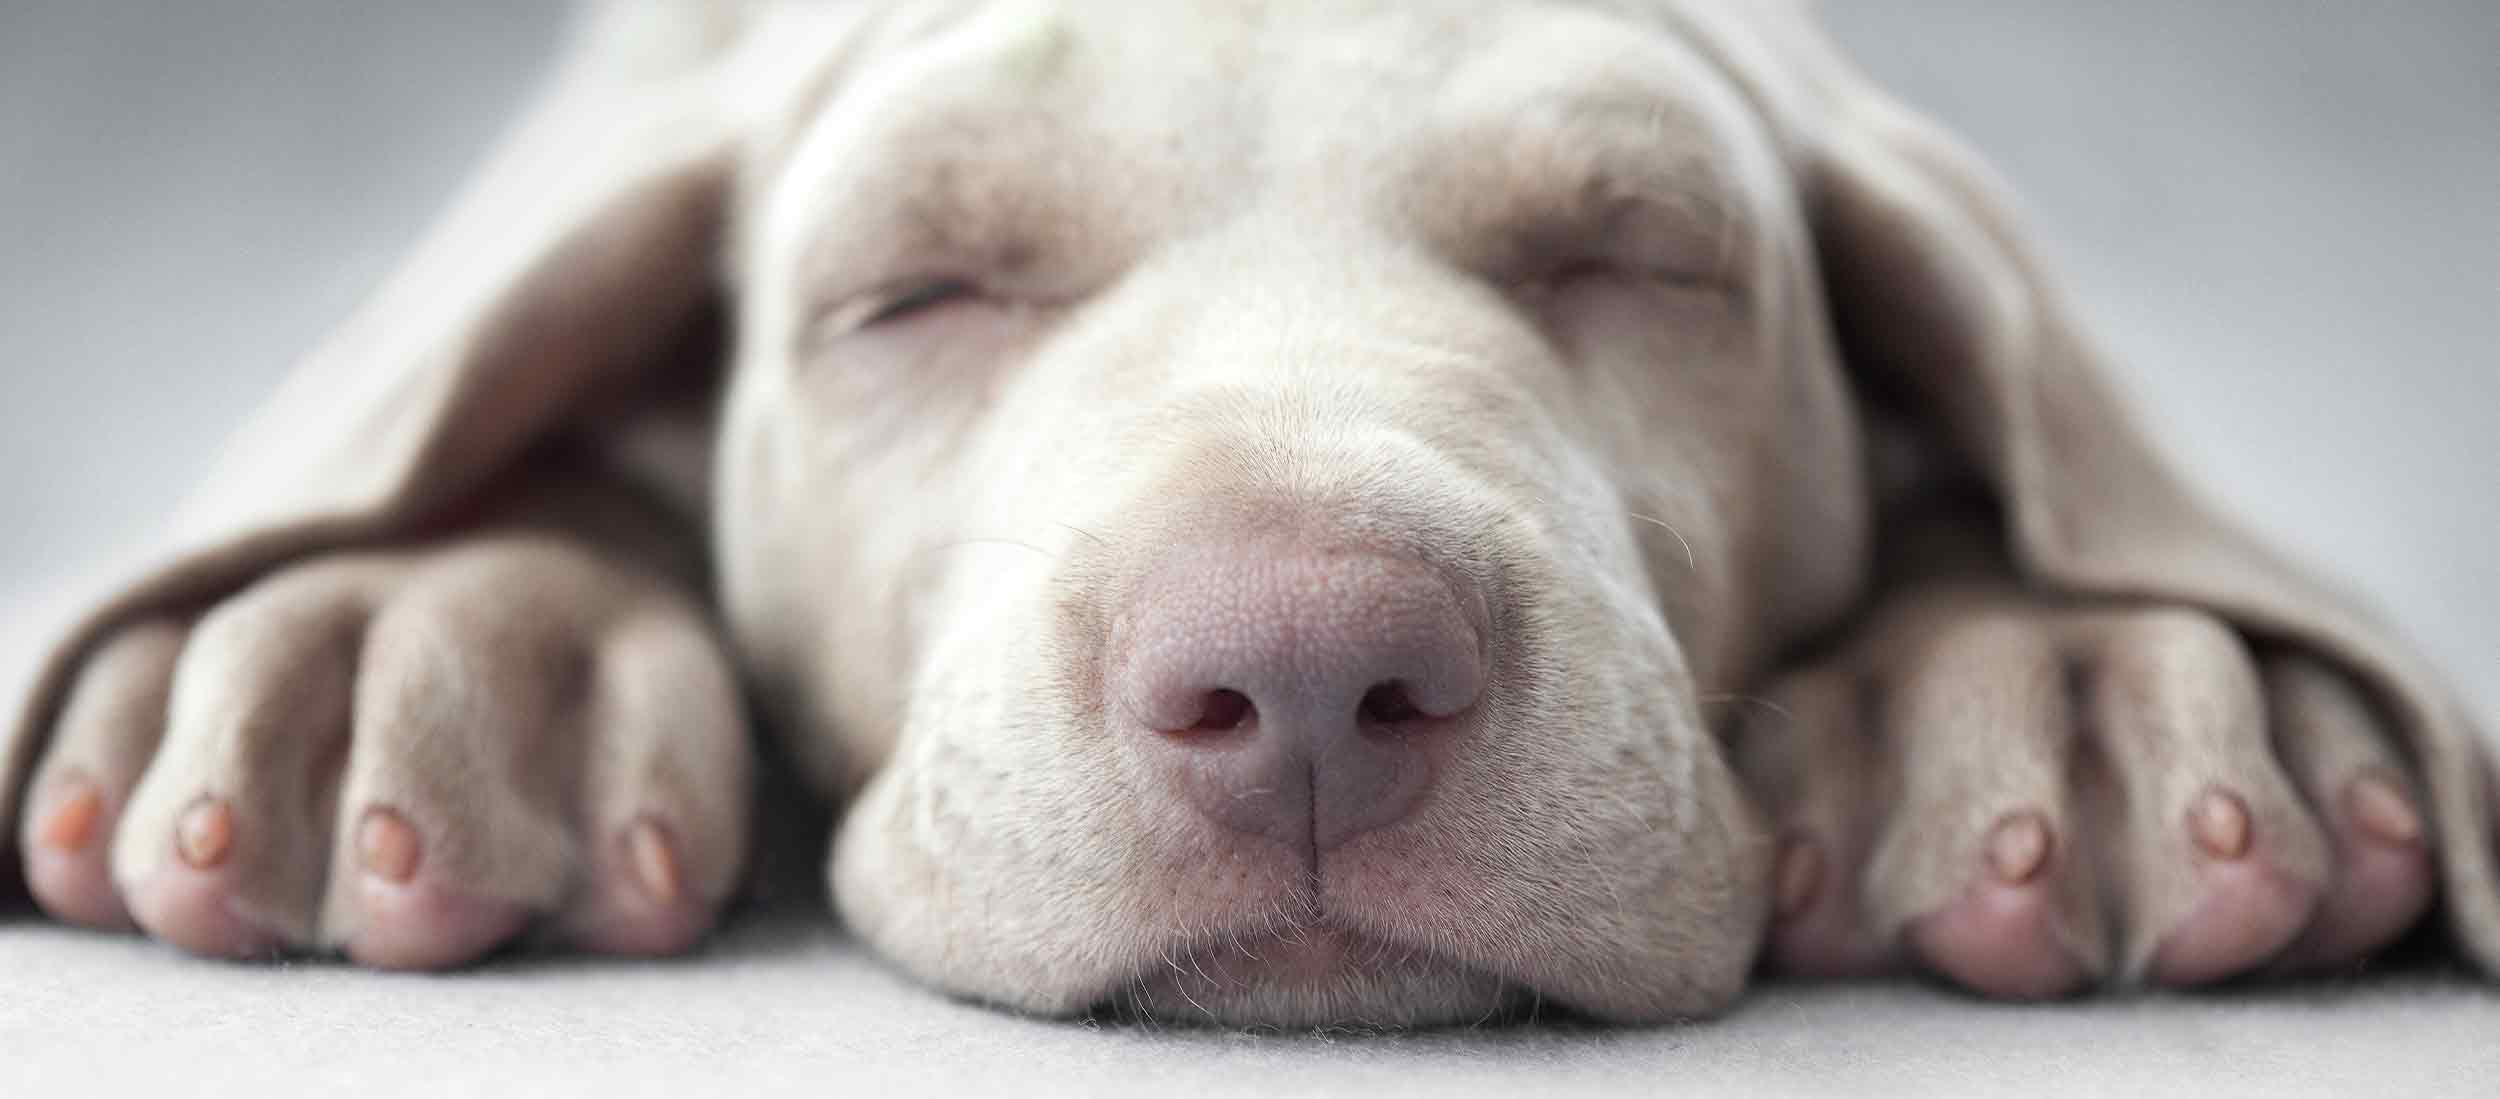 sleeping peaceful dog